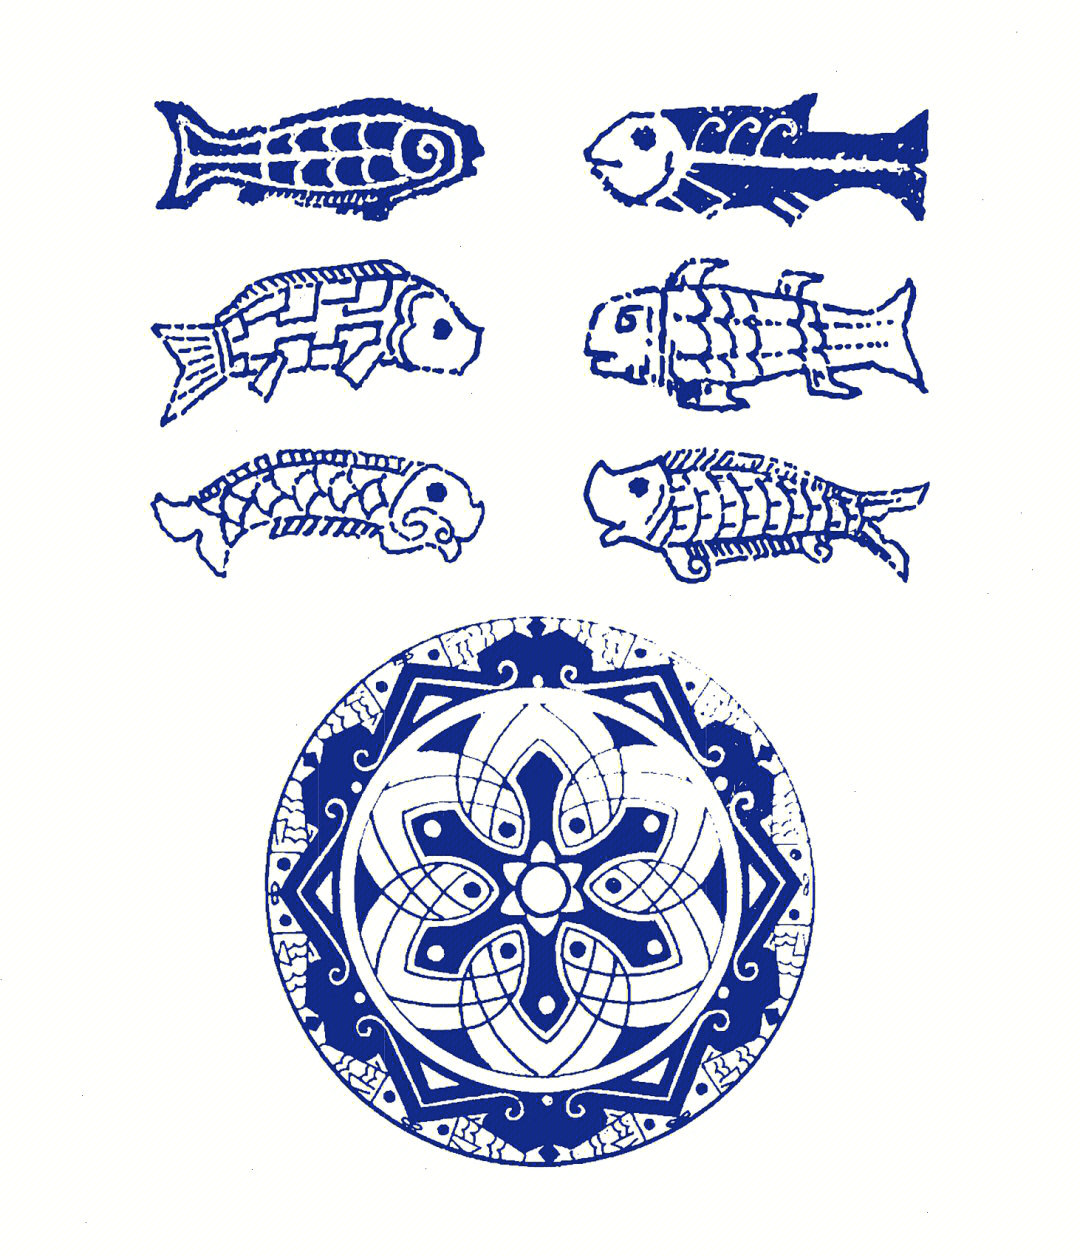 鱼纹是中国传统寓意纹样,图案表现为鱼的形态,鱼纹常饰于盘内,反映